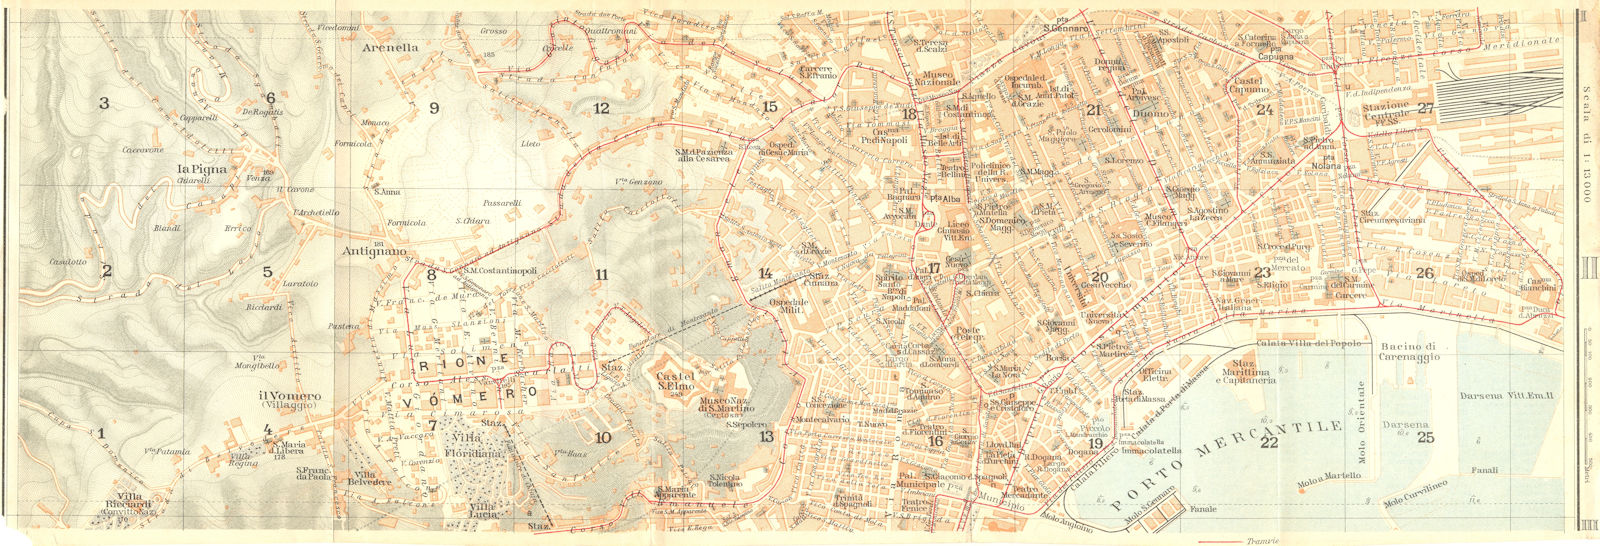 ITALY. Napoli section II of III 1925 old vintage map plan chart